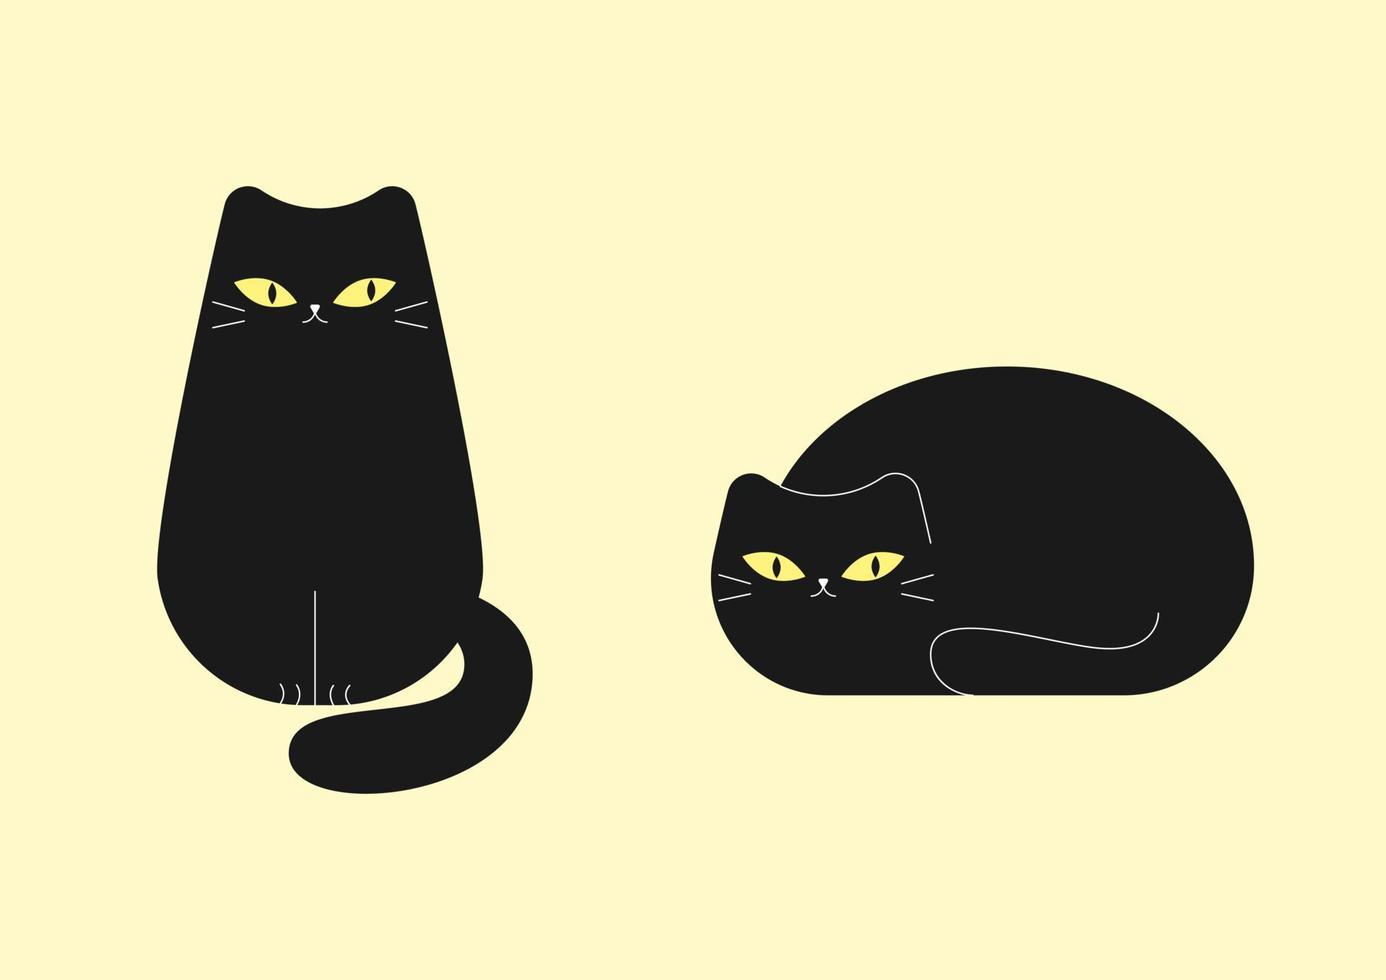 twee zwarte katten. schattige schattige katten van verschillende rassen zitten, liggen, lopen. set van leuke grappige huisdieren of huisdieren geïsoleerd op een lichte achtergrond. platte cartoon vectorillustratie. vector